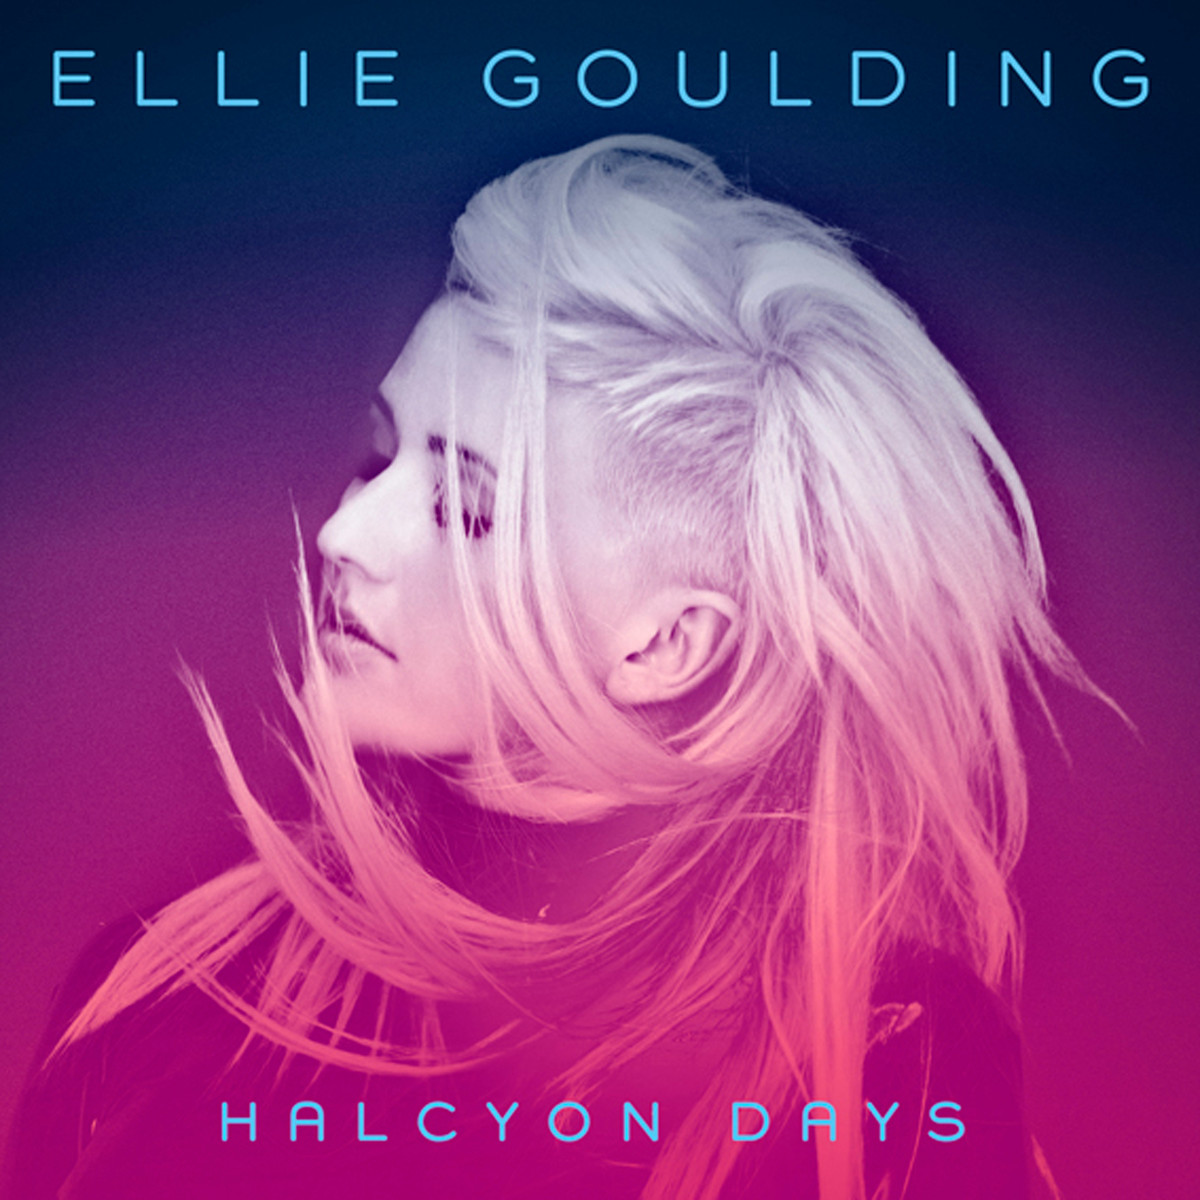 "Halcyon days" d'Ellie Goulding